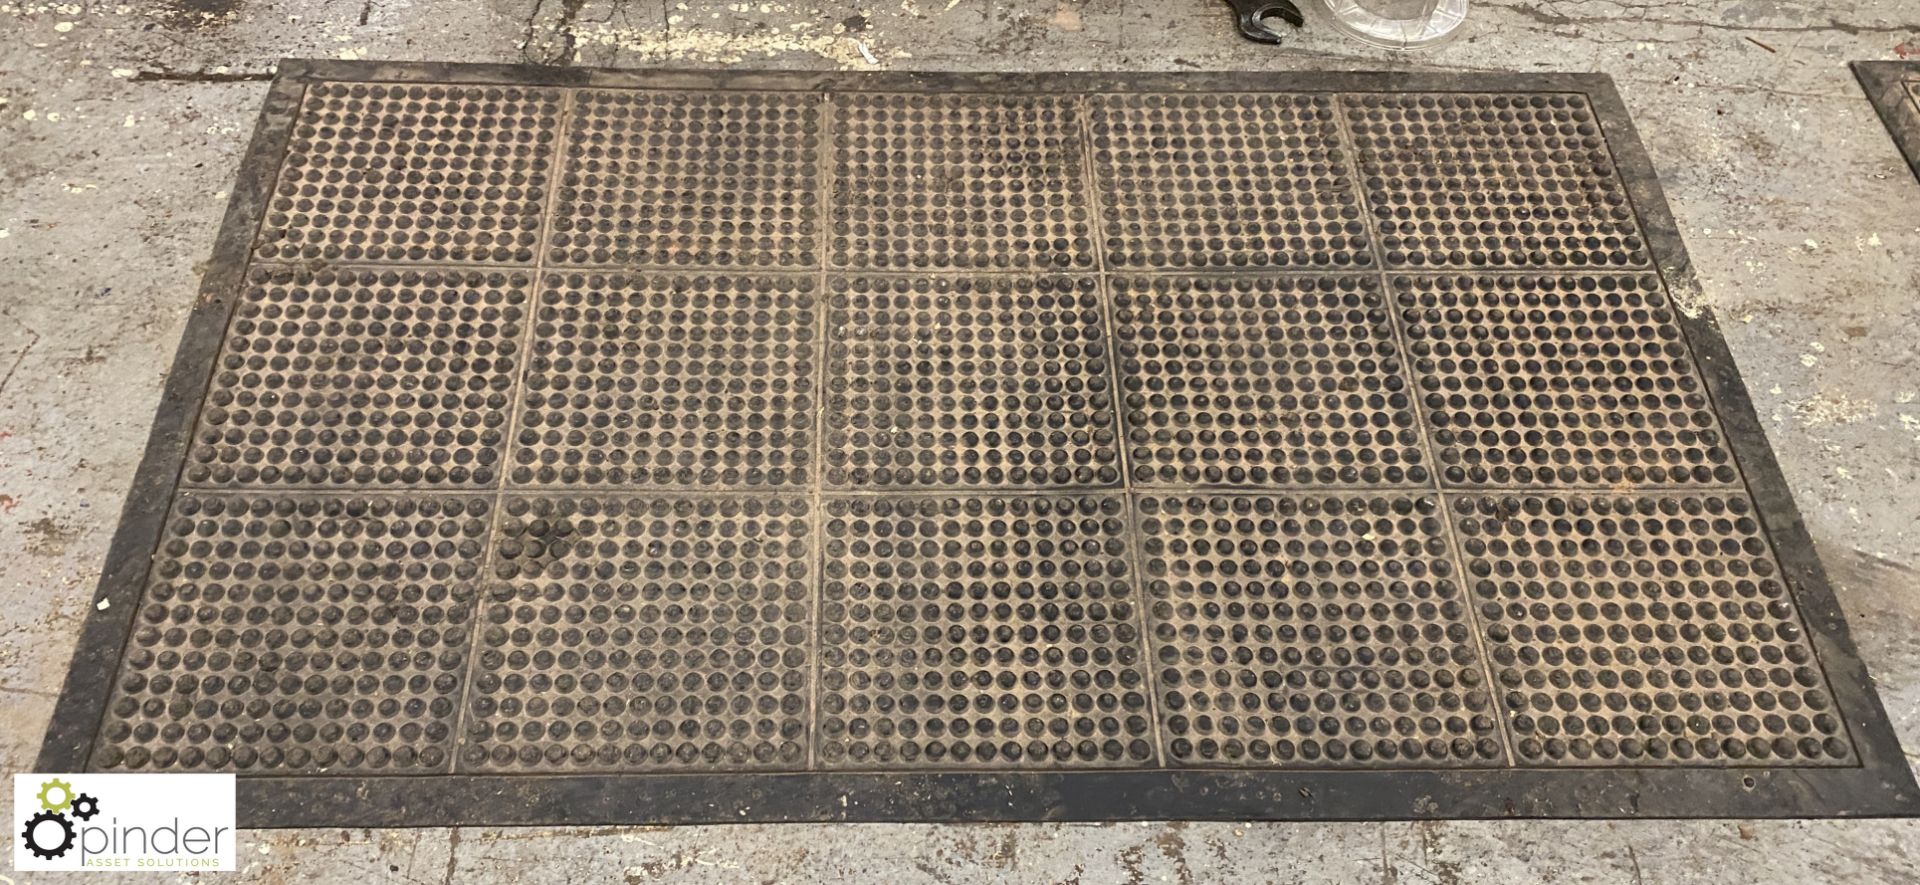 2 Anti-slip machine operator mats - Image 2 of 5